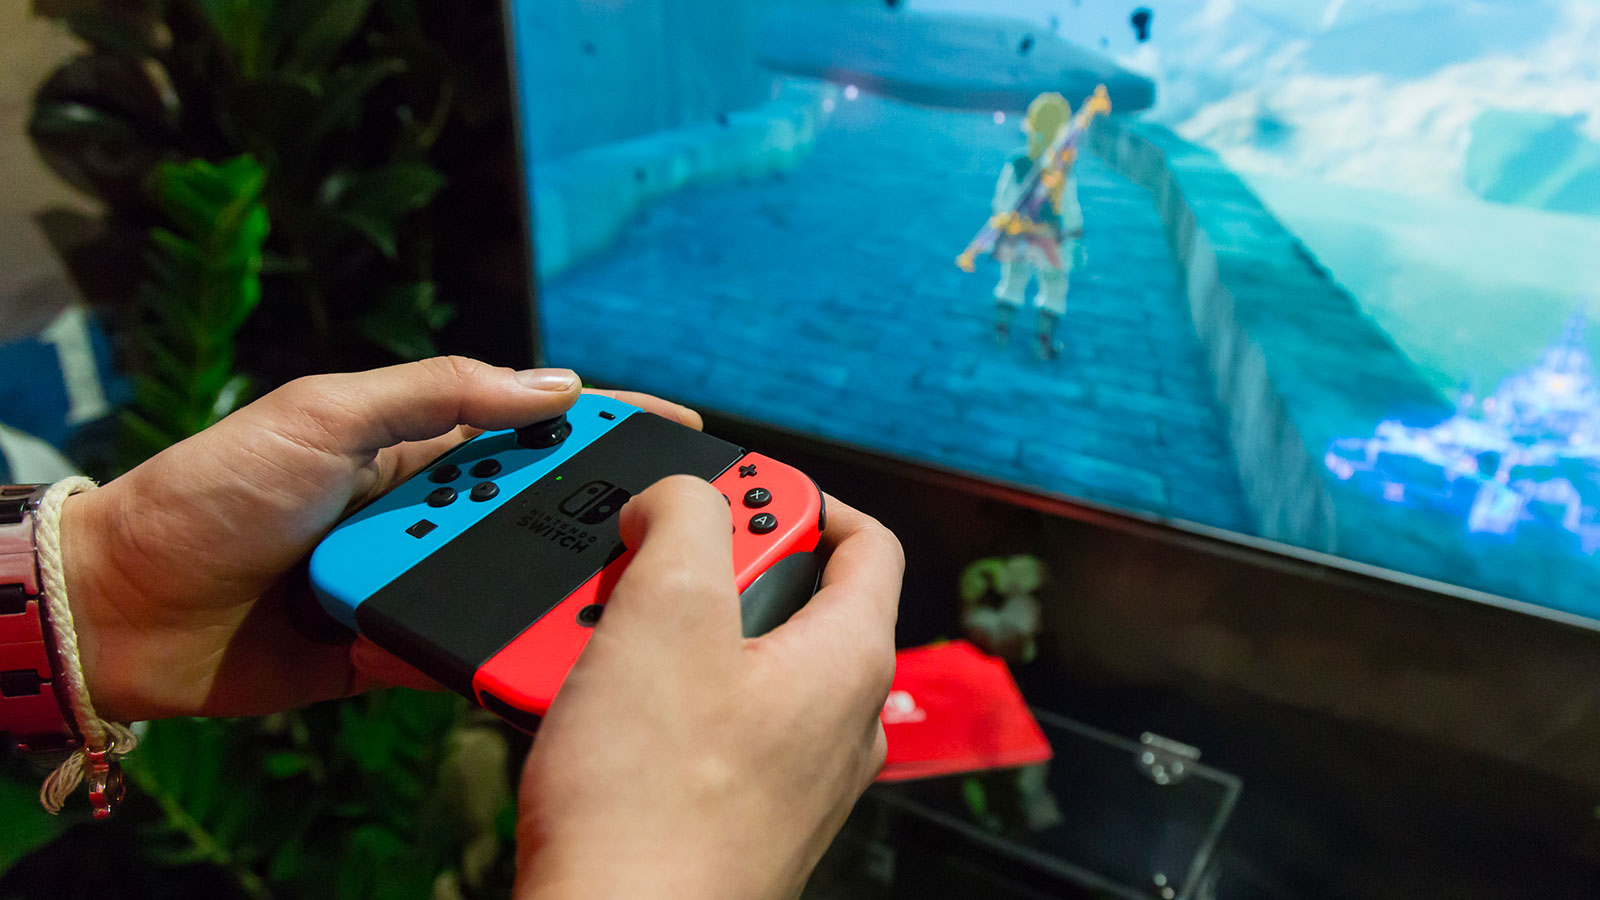 Votre Switch pourrait être bannie par Nintendo à cause de l'arrivée de cet accessoire pirate